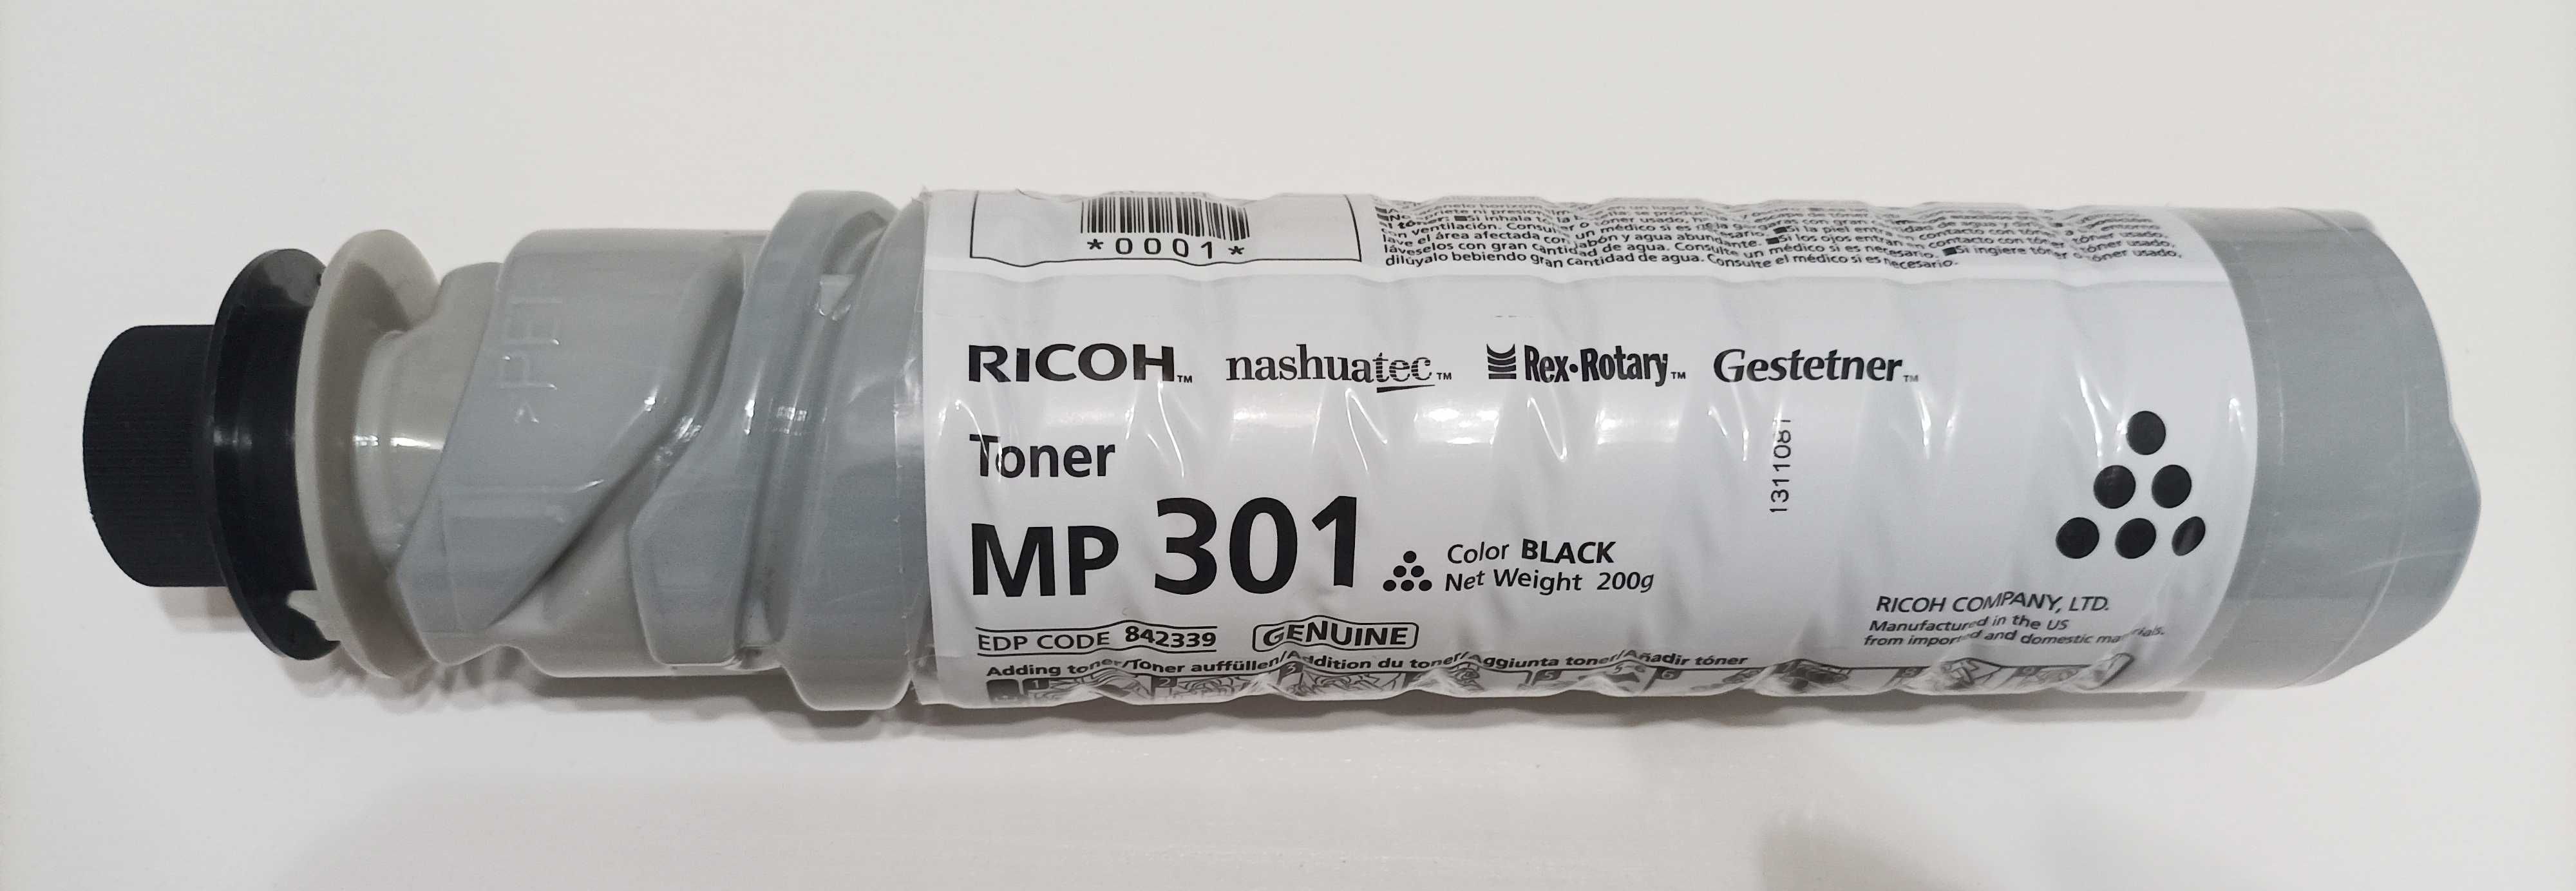 Toner preto Ricoh MP 301 (Original e novo)